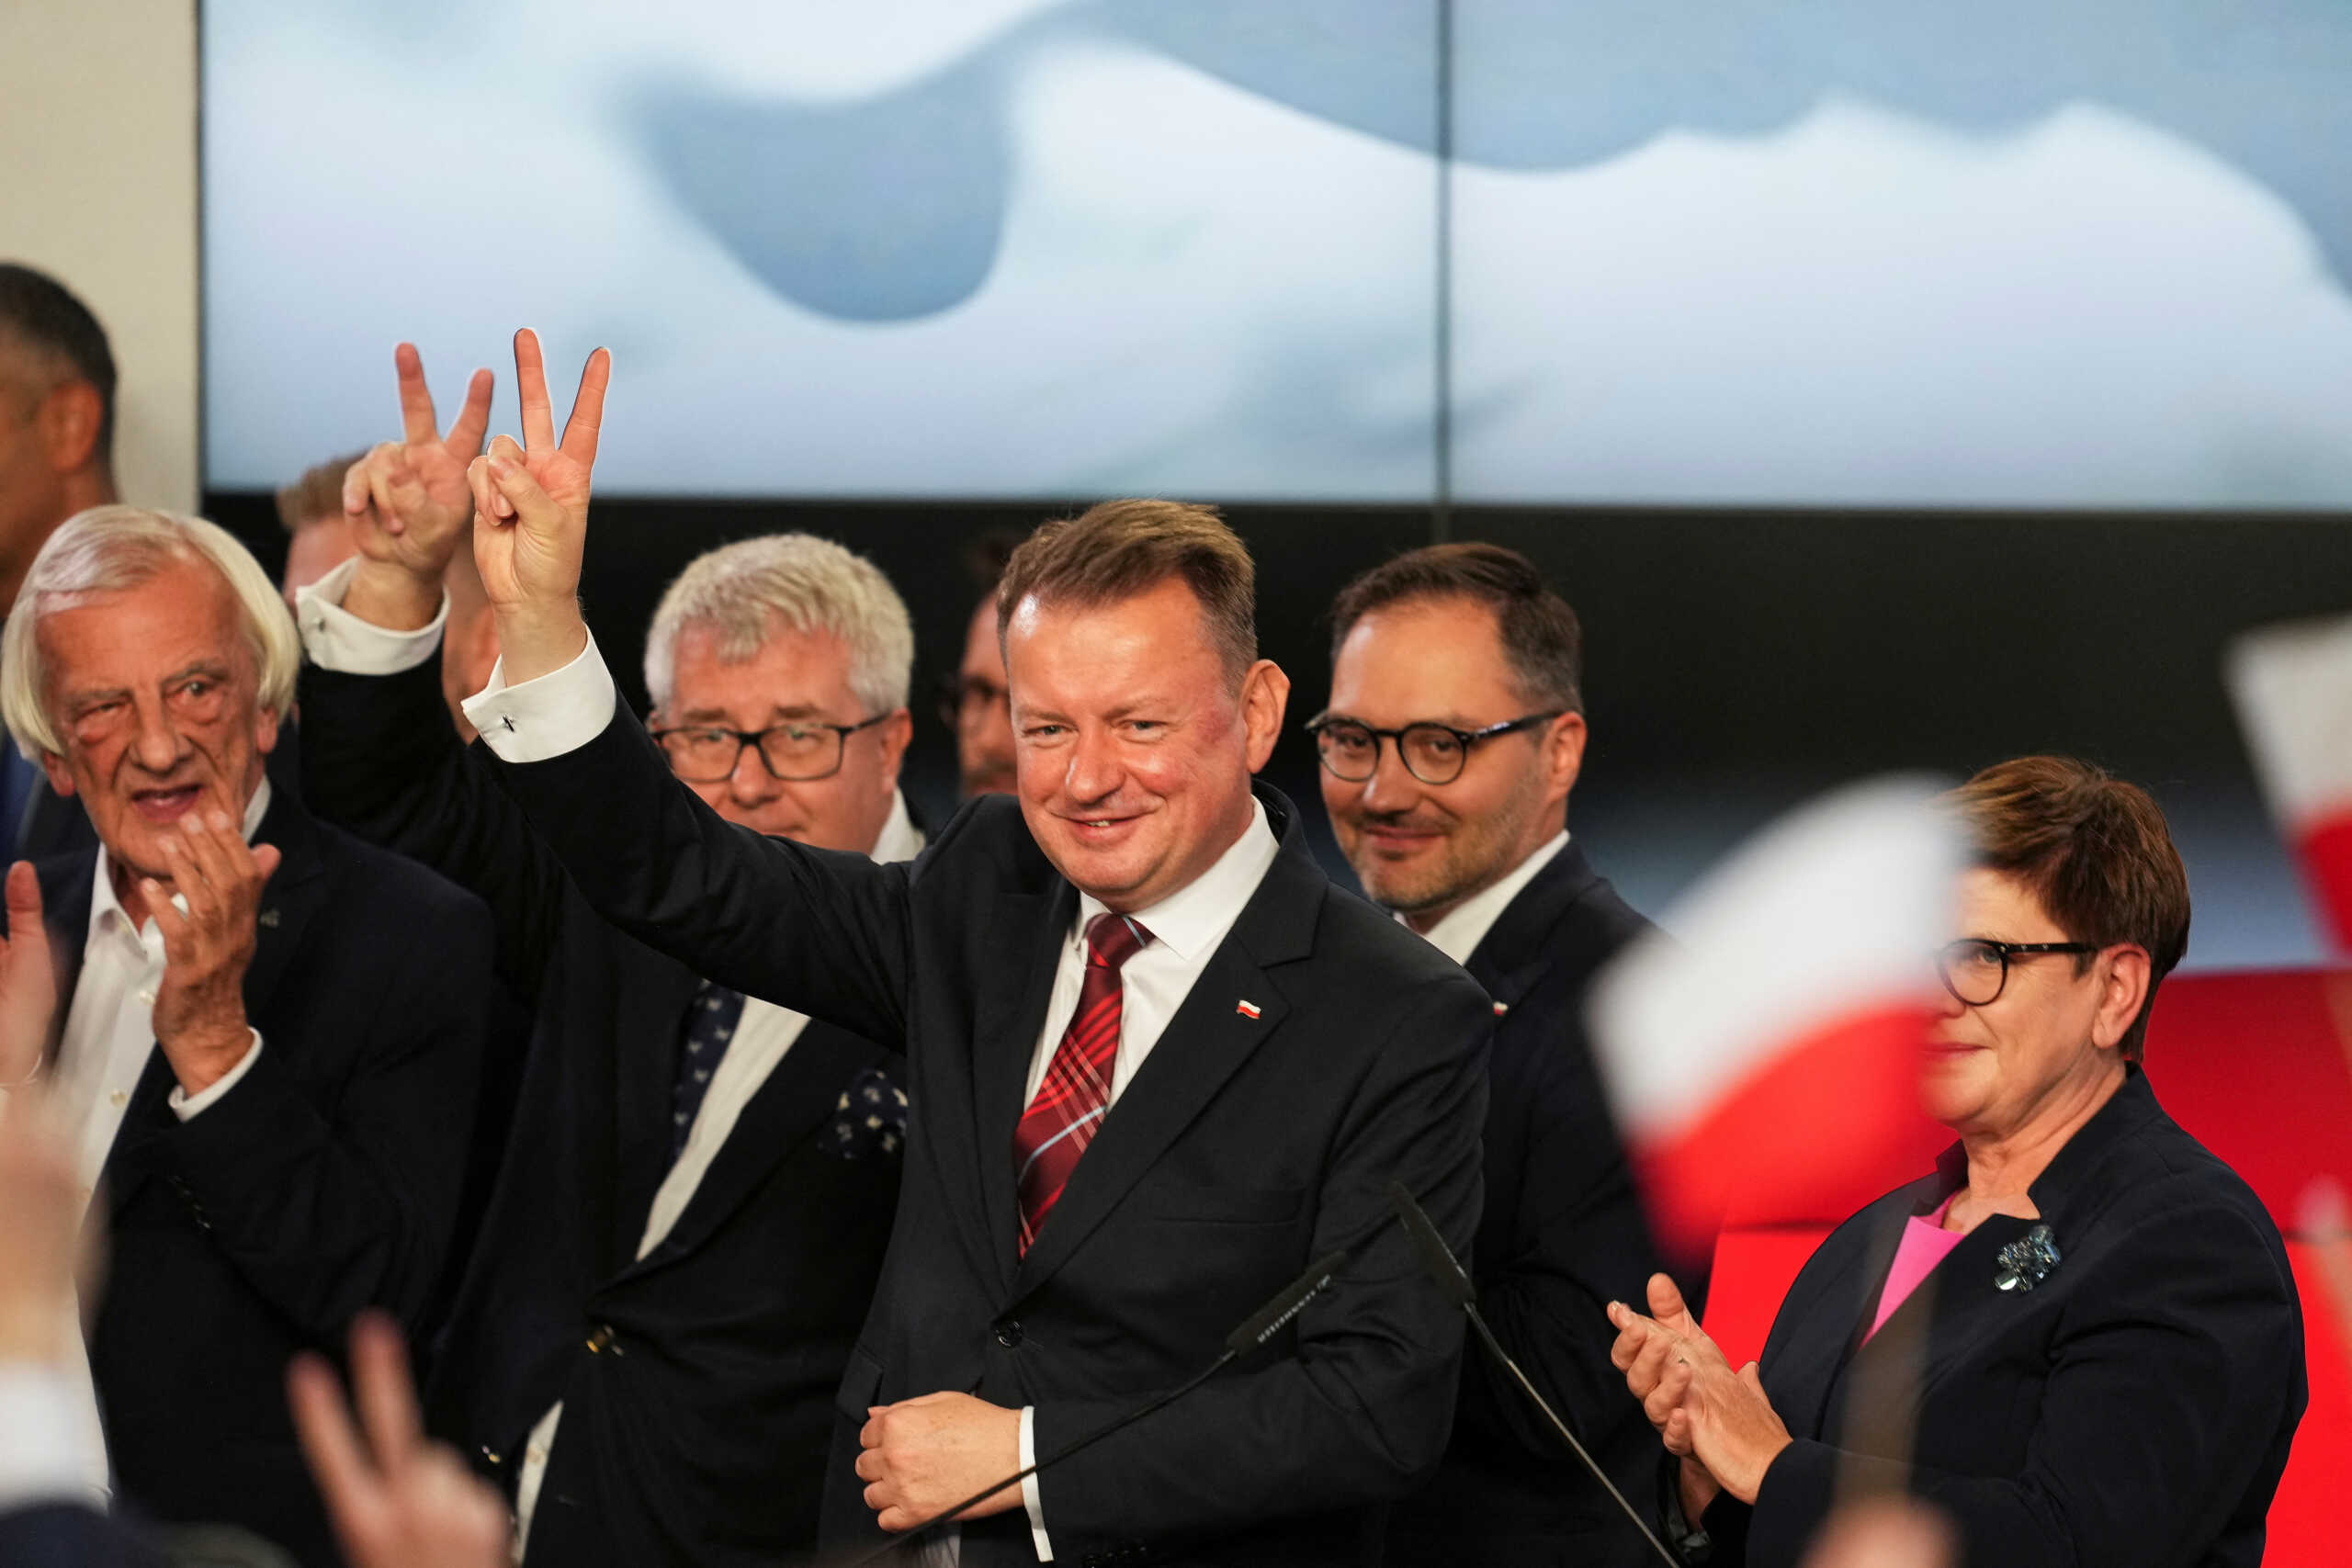 Εκλογές στην Πολωνία: Πρώτο κόμμα οι εθνικιστές του PiS, έχασε ο Ντόναλντ Τουσκ